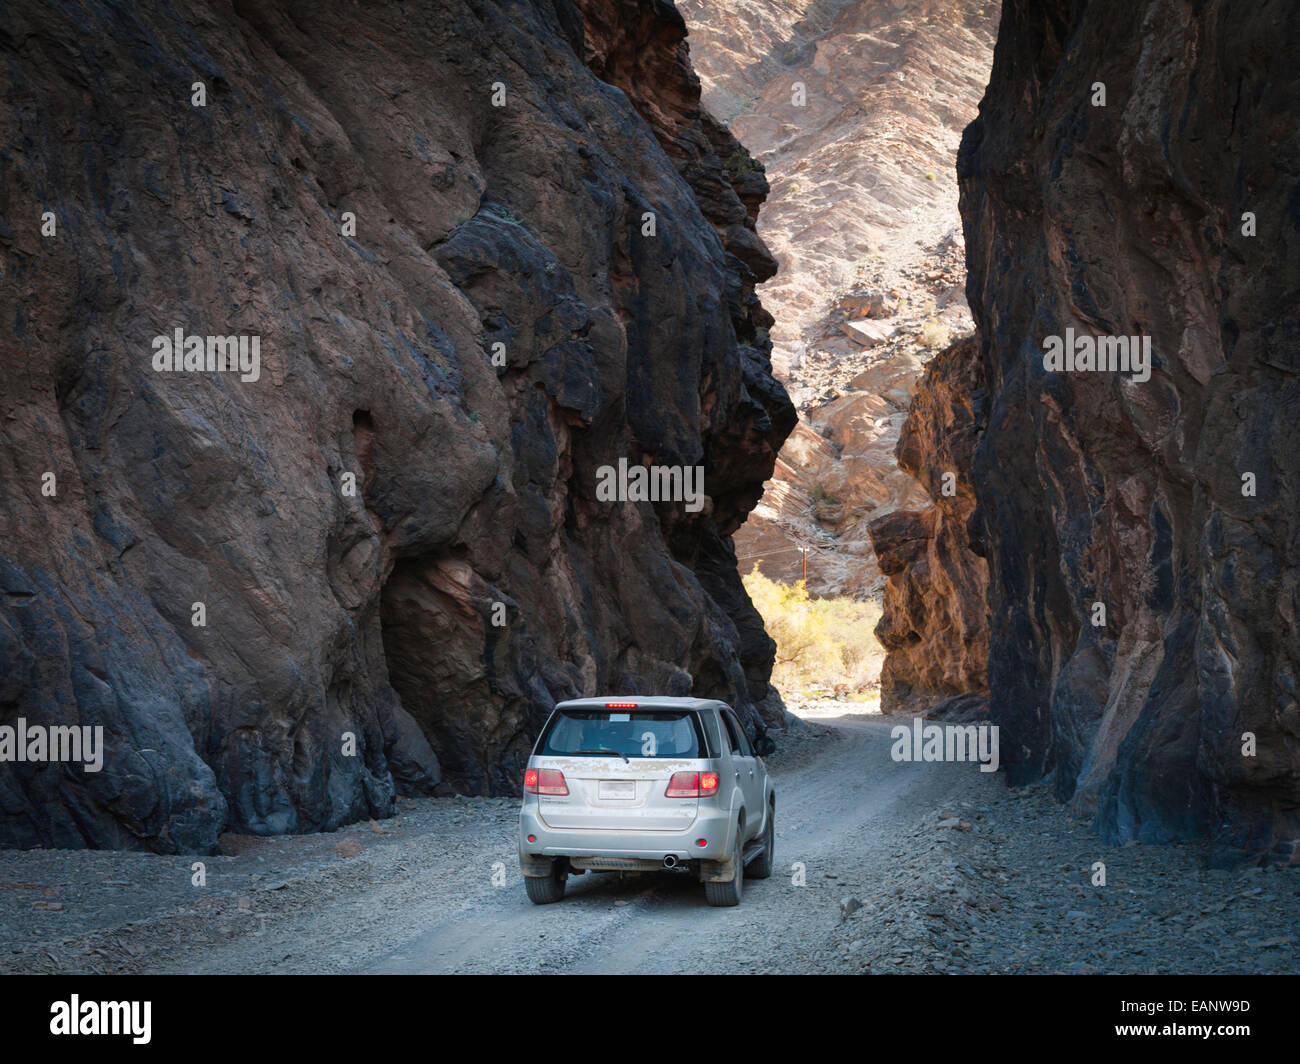 Road through canyon between Wadi As Sahtan and Wadi Bani Awf, Oman Stock Photo